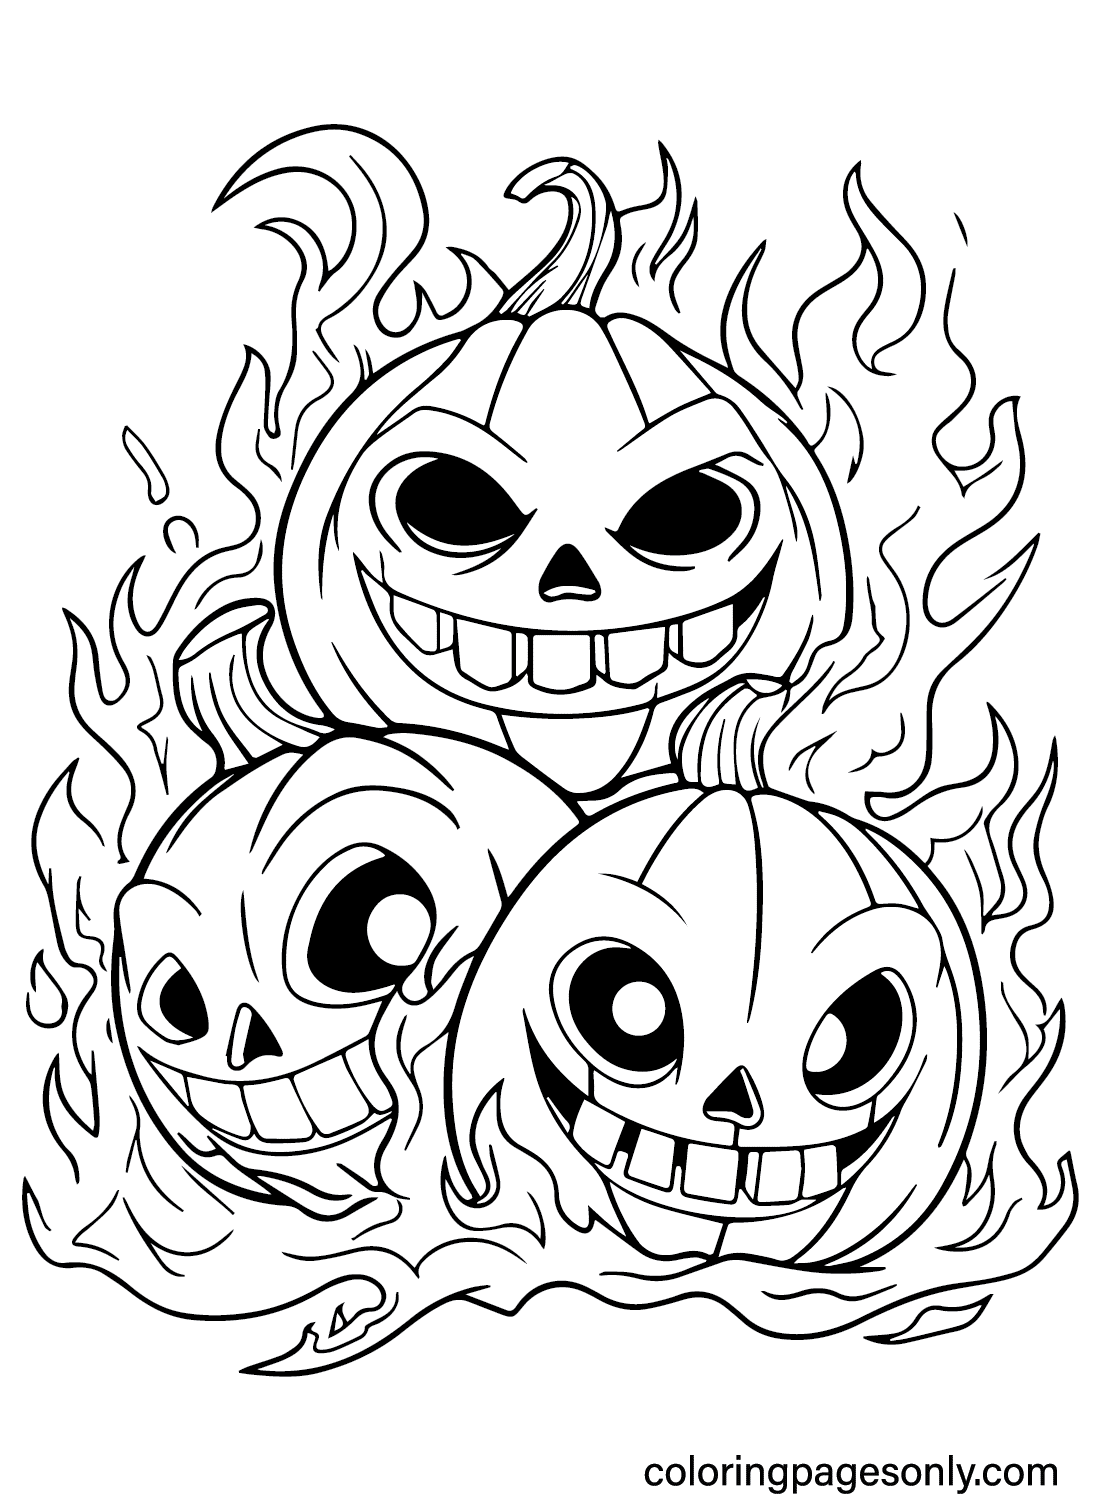 Página para colorear de calabaza de Halloween aterradora de Spooktacular Halloween